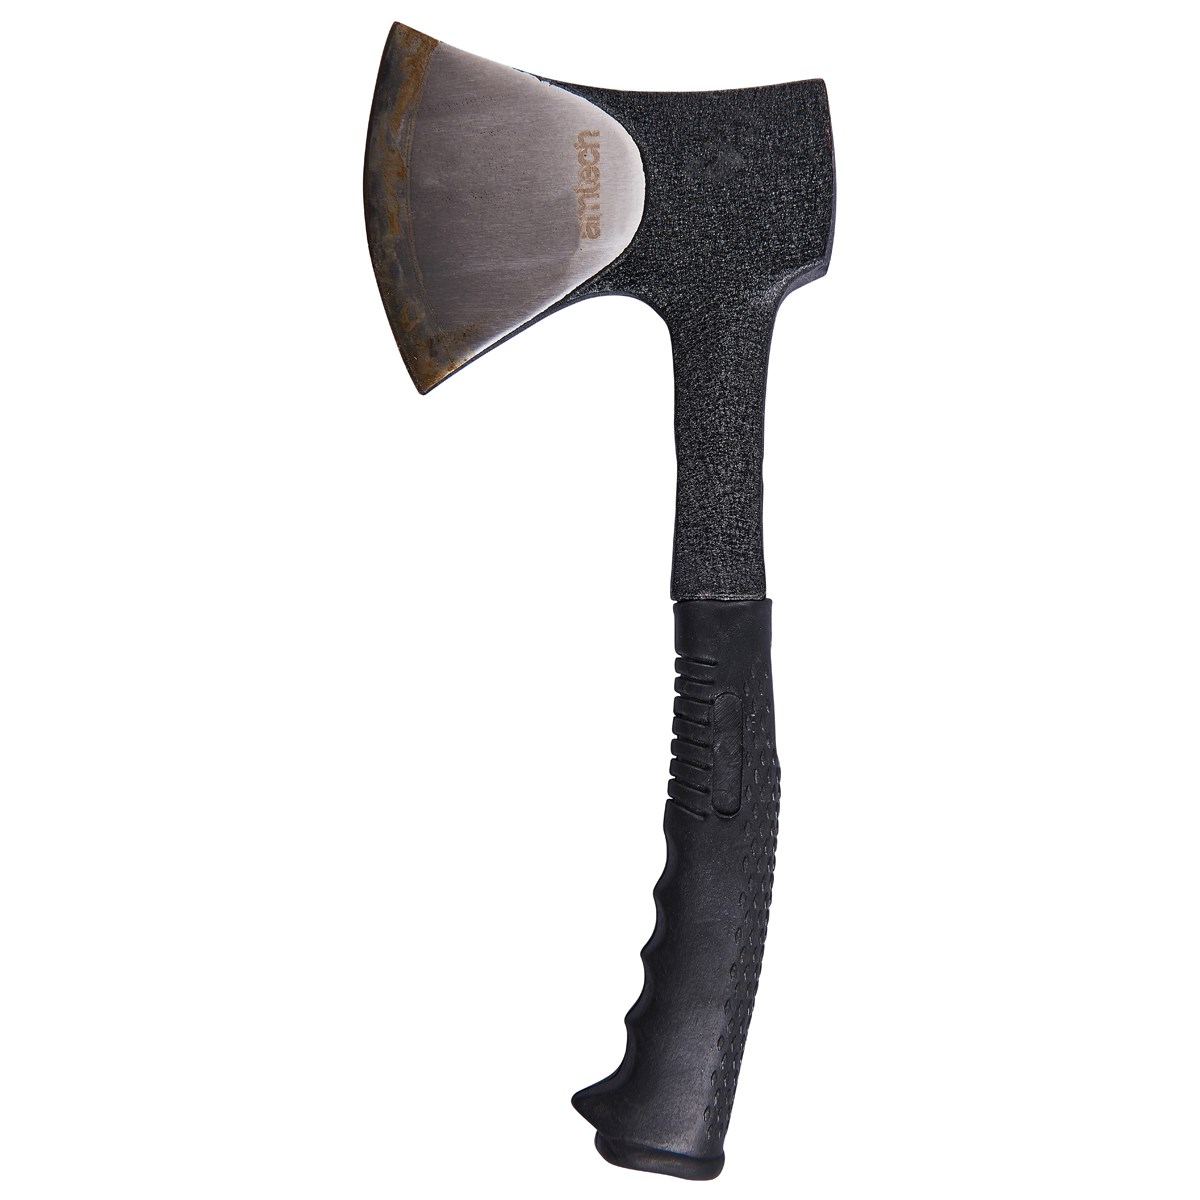 one piece  camping axe  Amtech